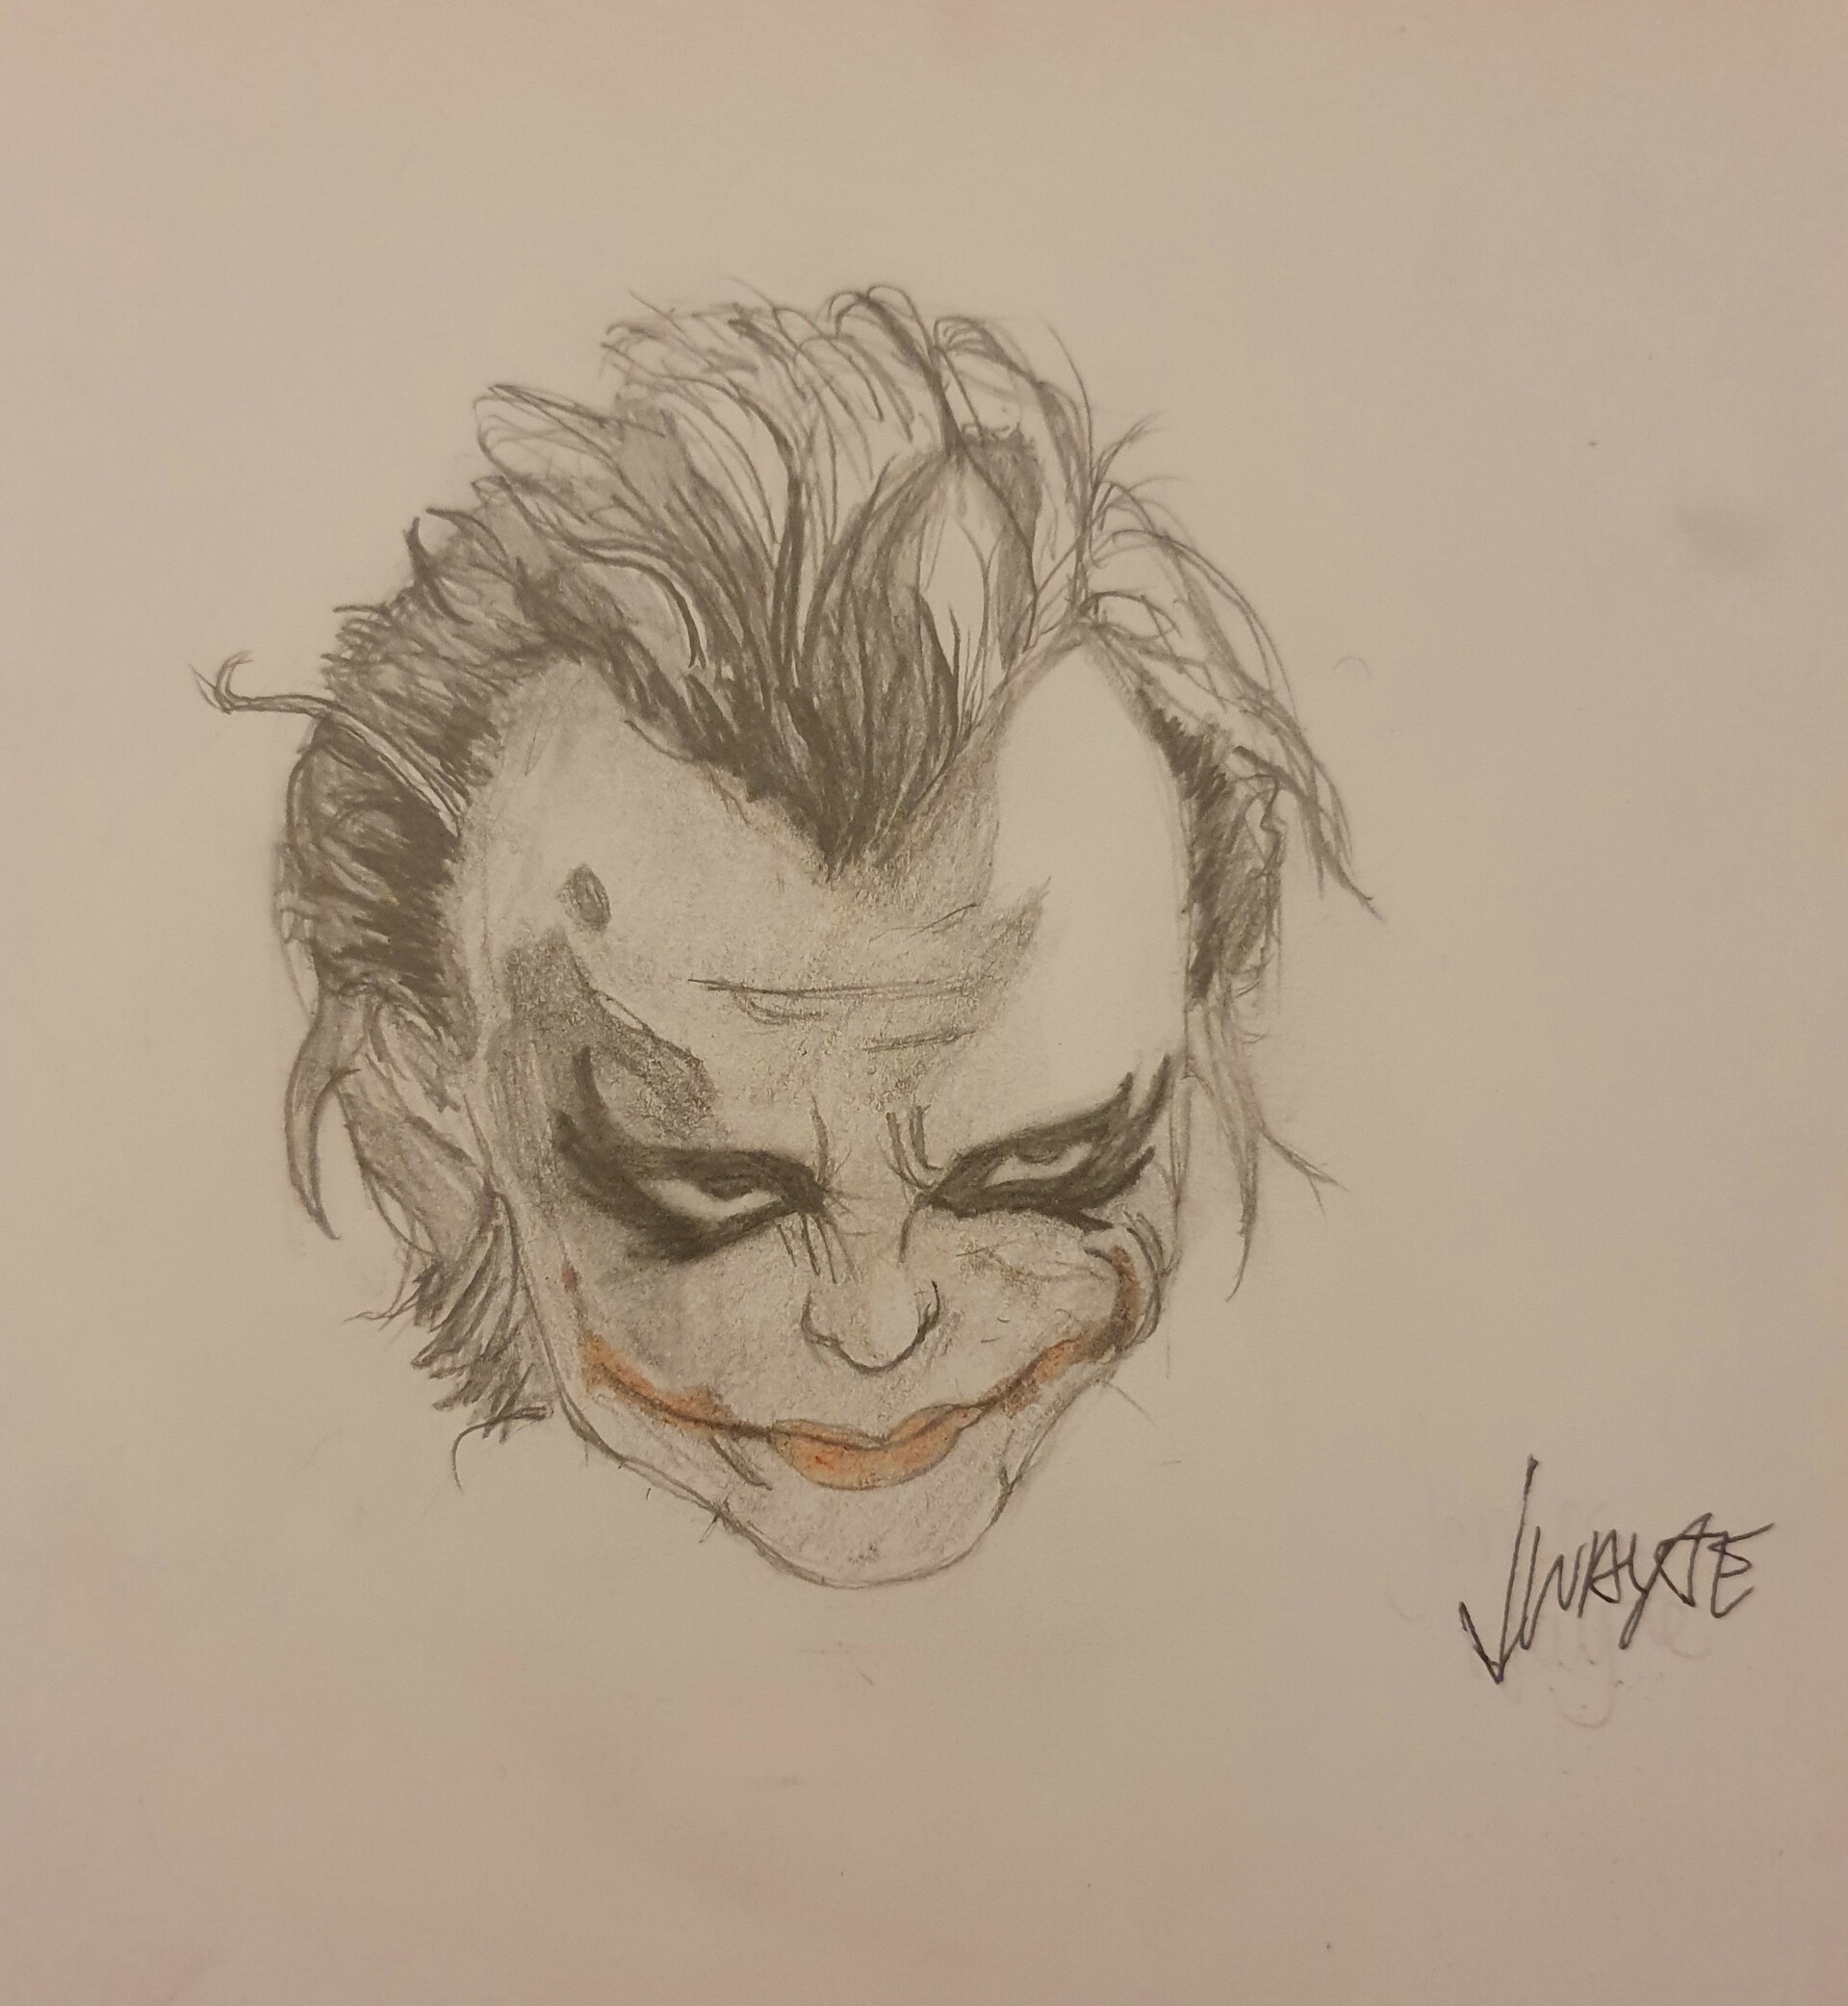 joker heath ledger drawing  Google Search  Joker drawings Joker artwork Joker  heath